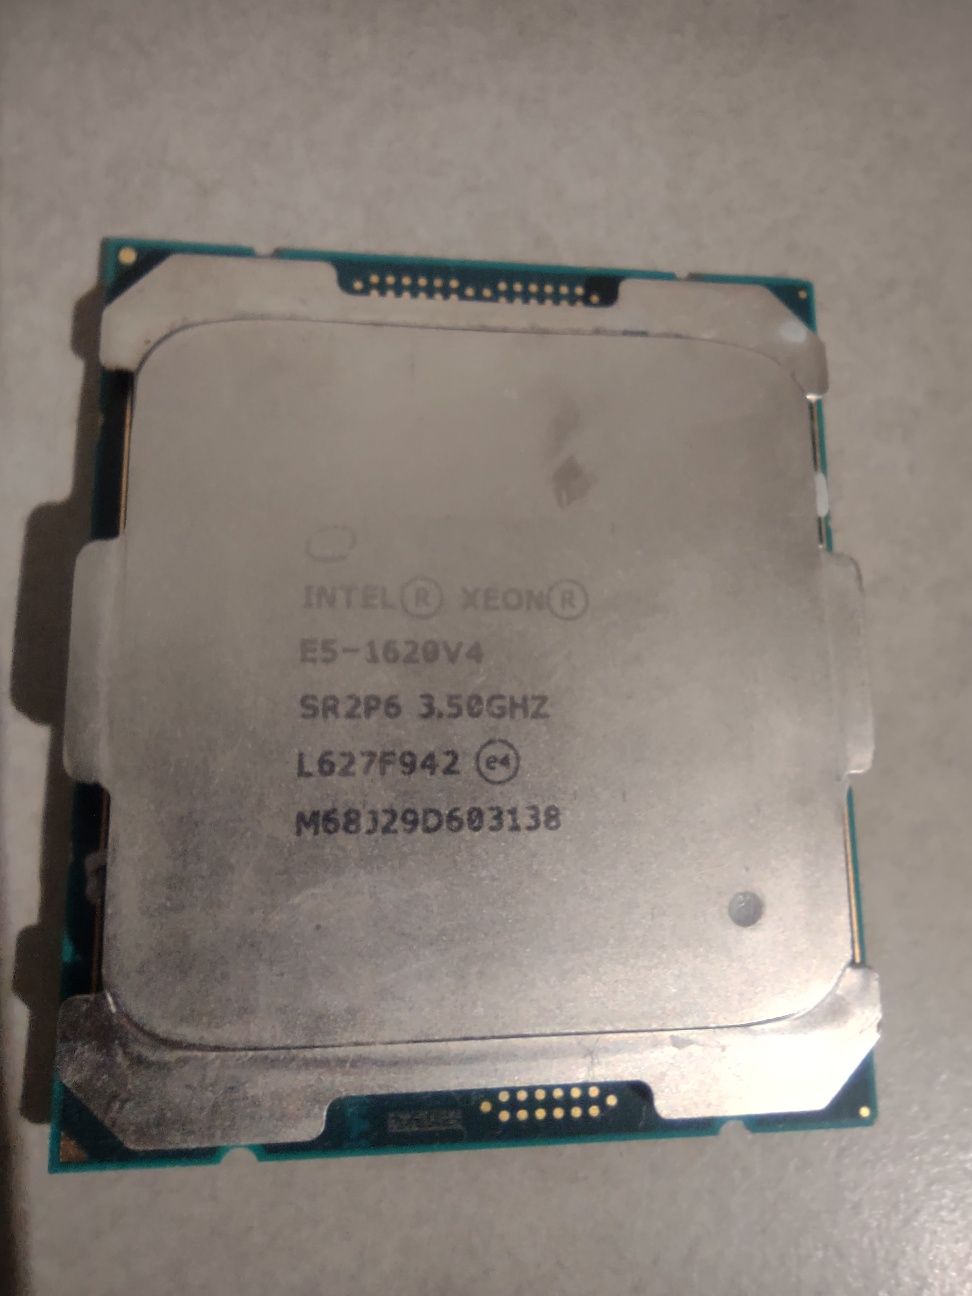 Procesor Xeon E5-1620v4